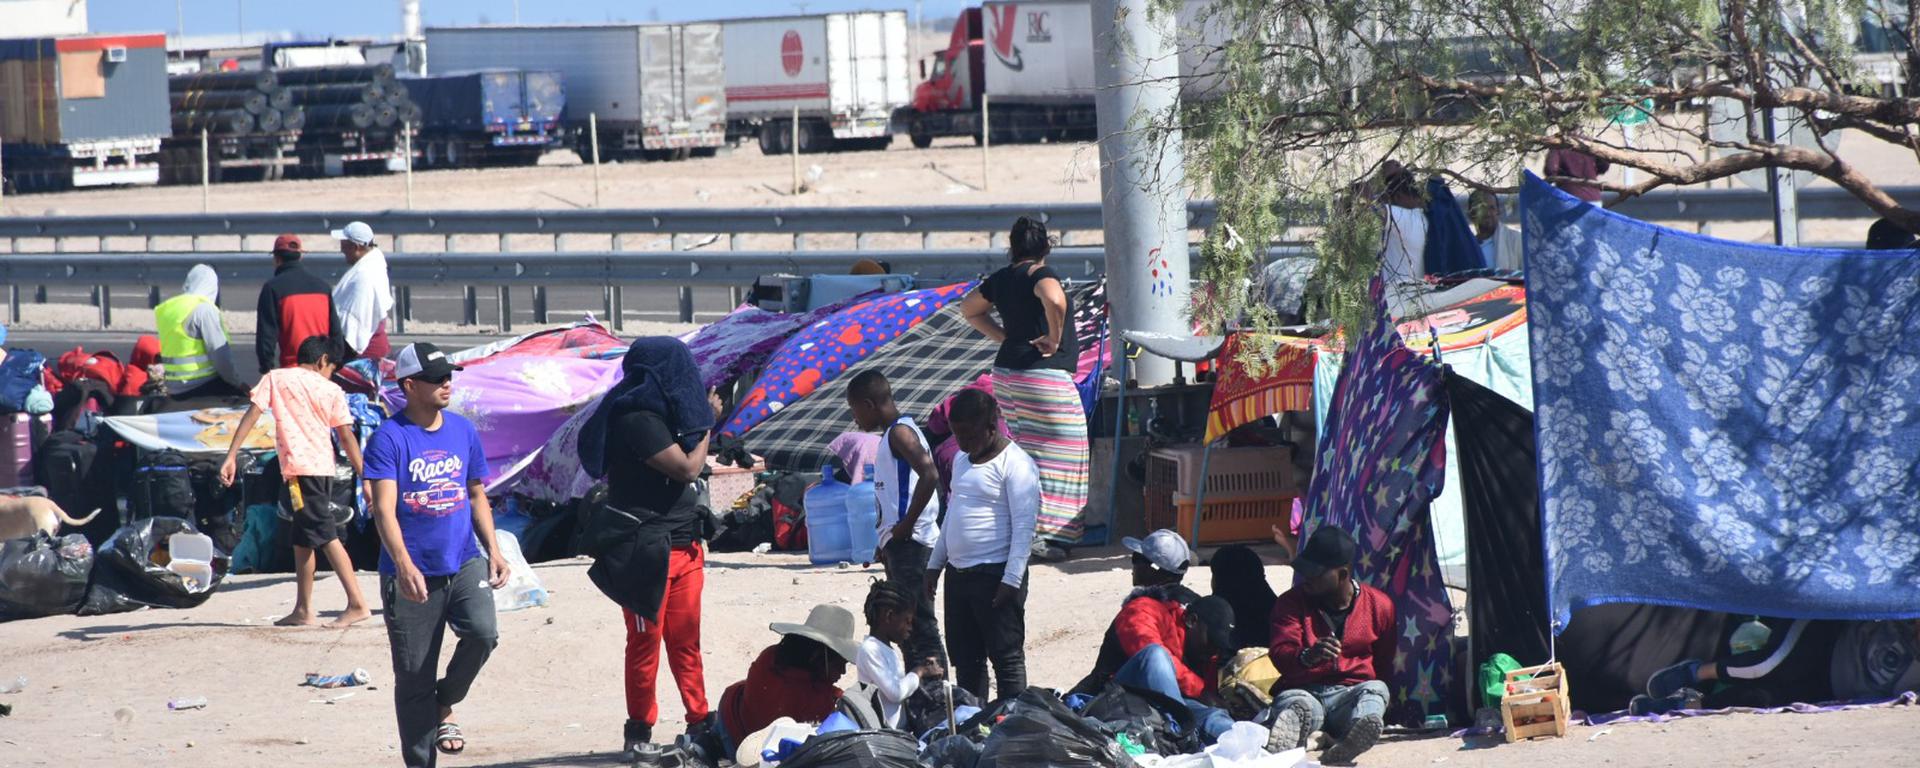 Albergues para migrantes en Tacna: Opiniones de tres expertos sobre el anuncio del ministro del Interior